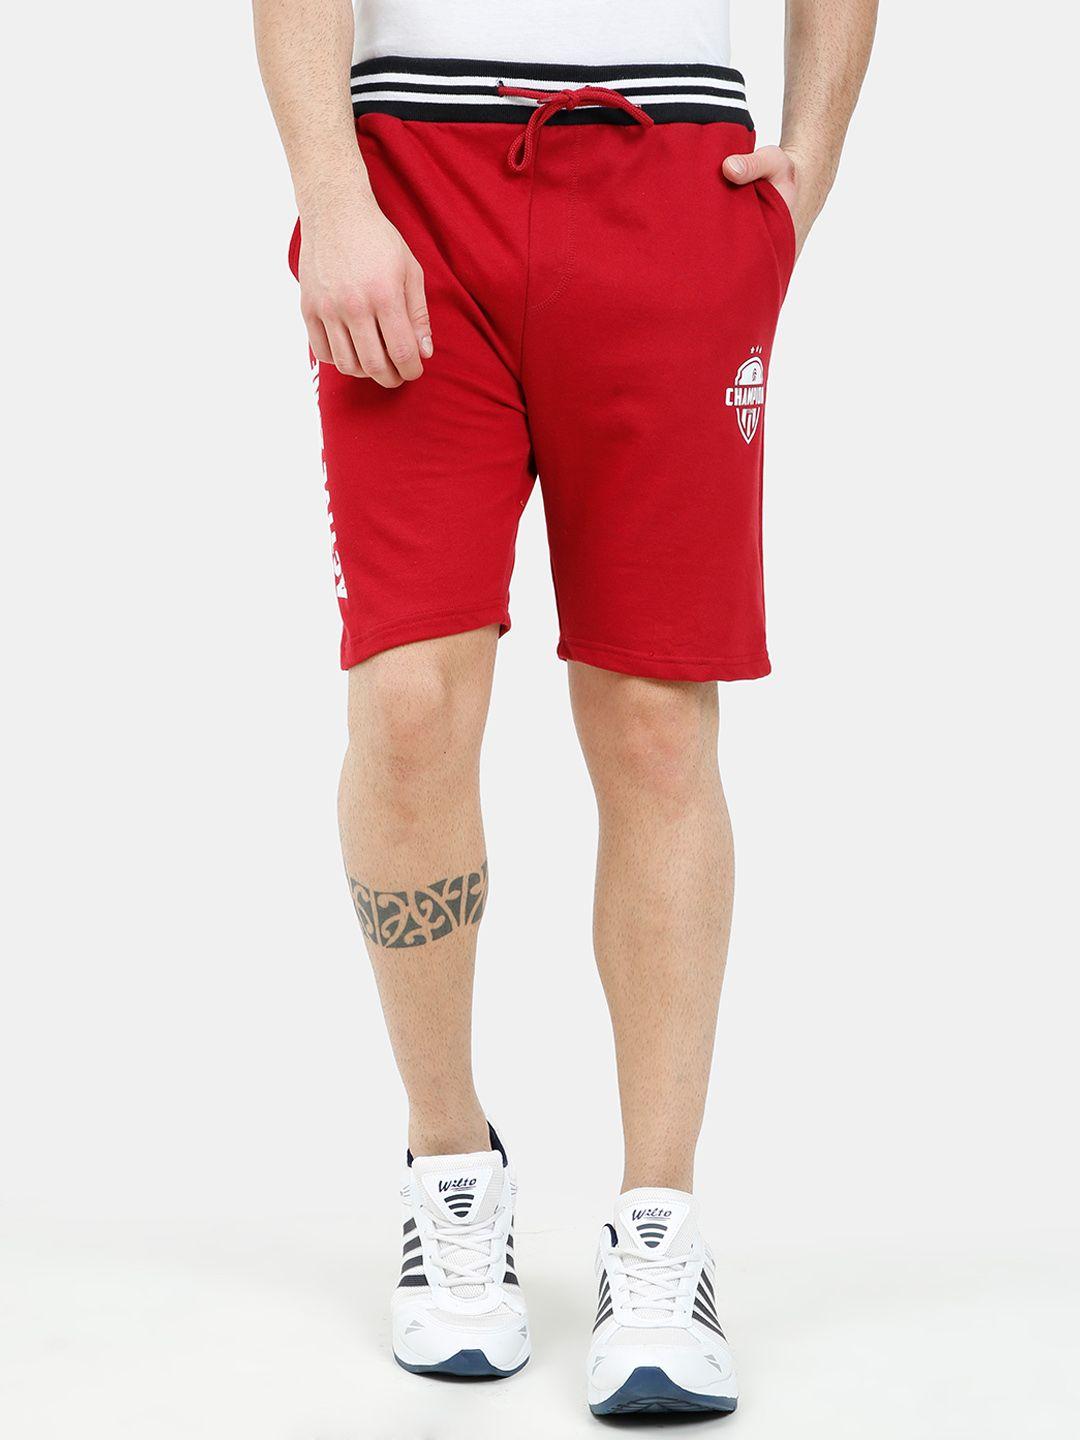 ardeur-men-red-sports-shorts